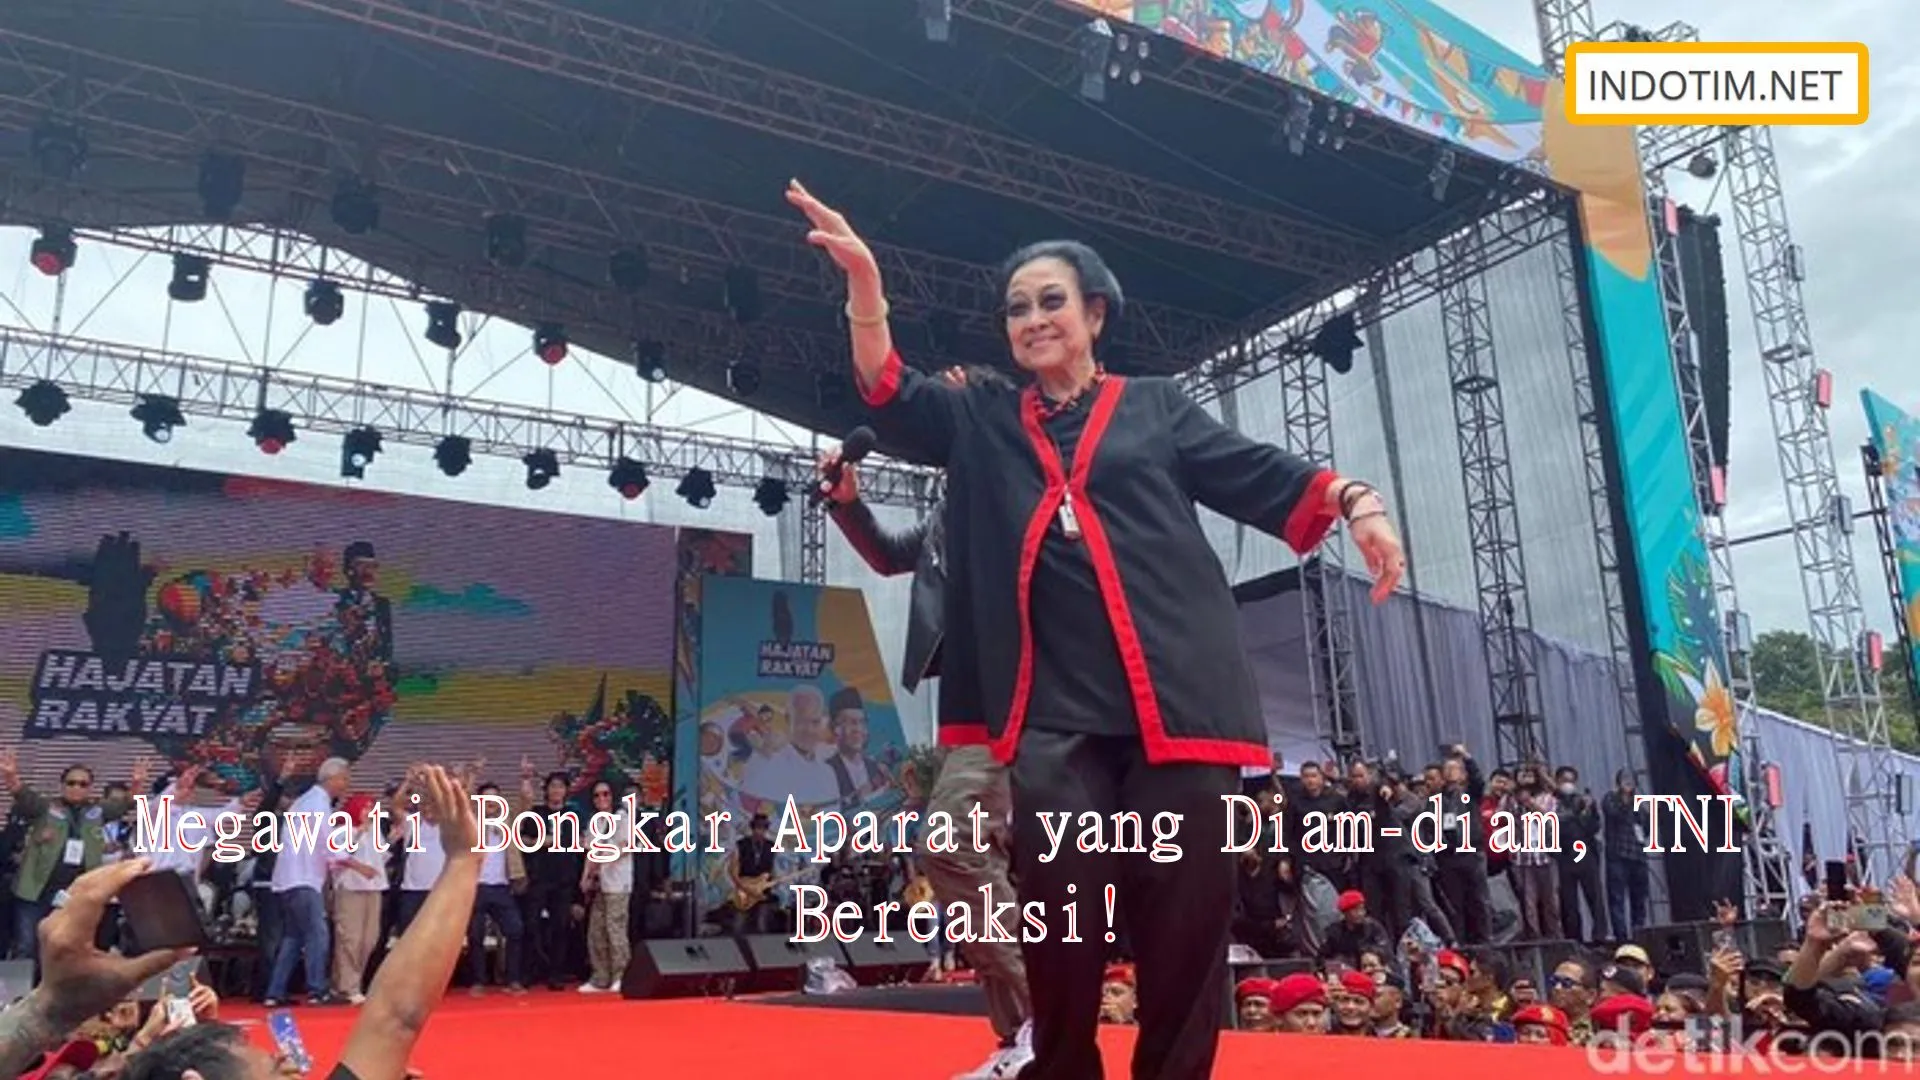 Megawati Bongkar Aparat yang Diam-diam, TNI Bereaksi!